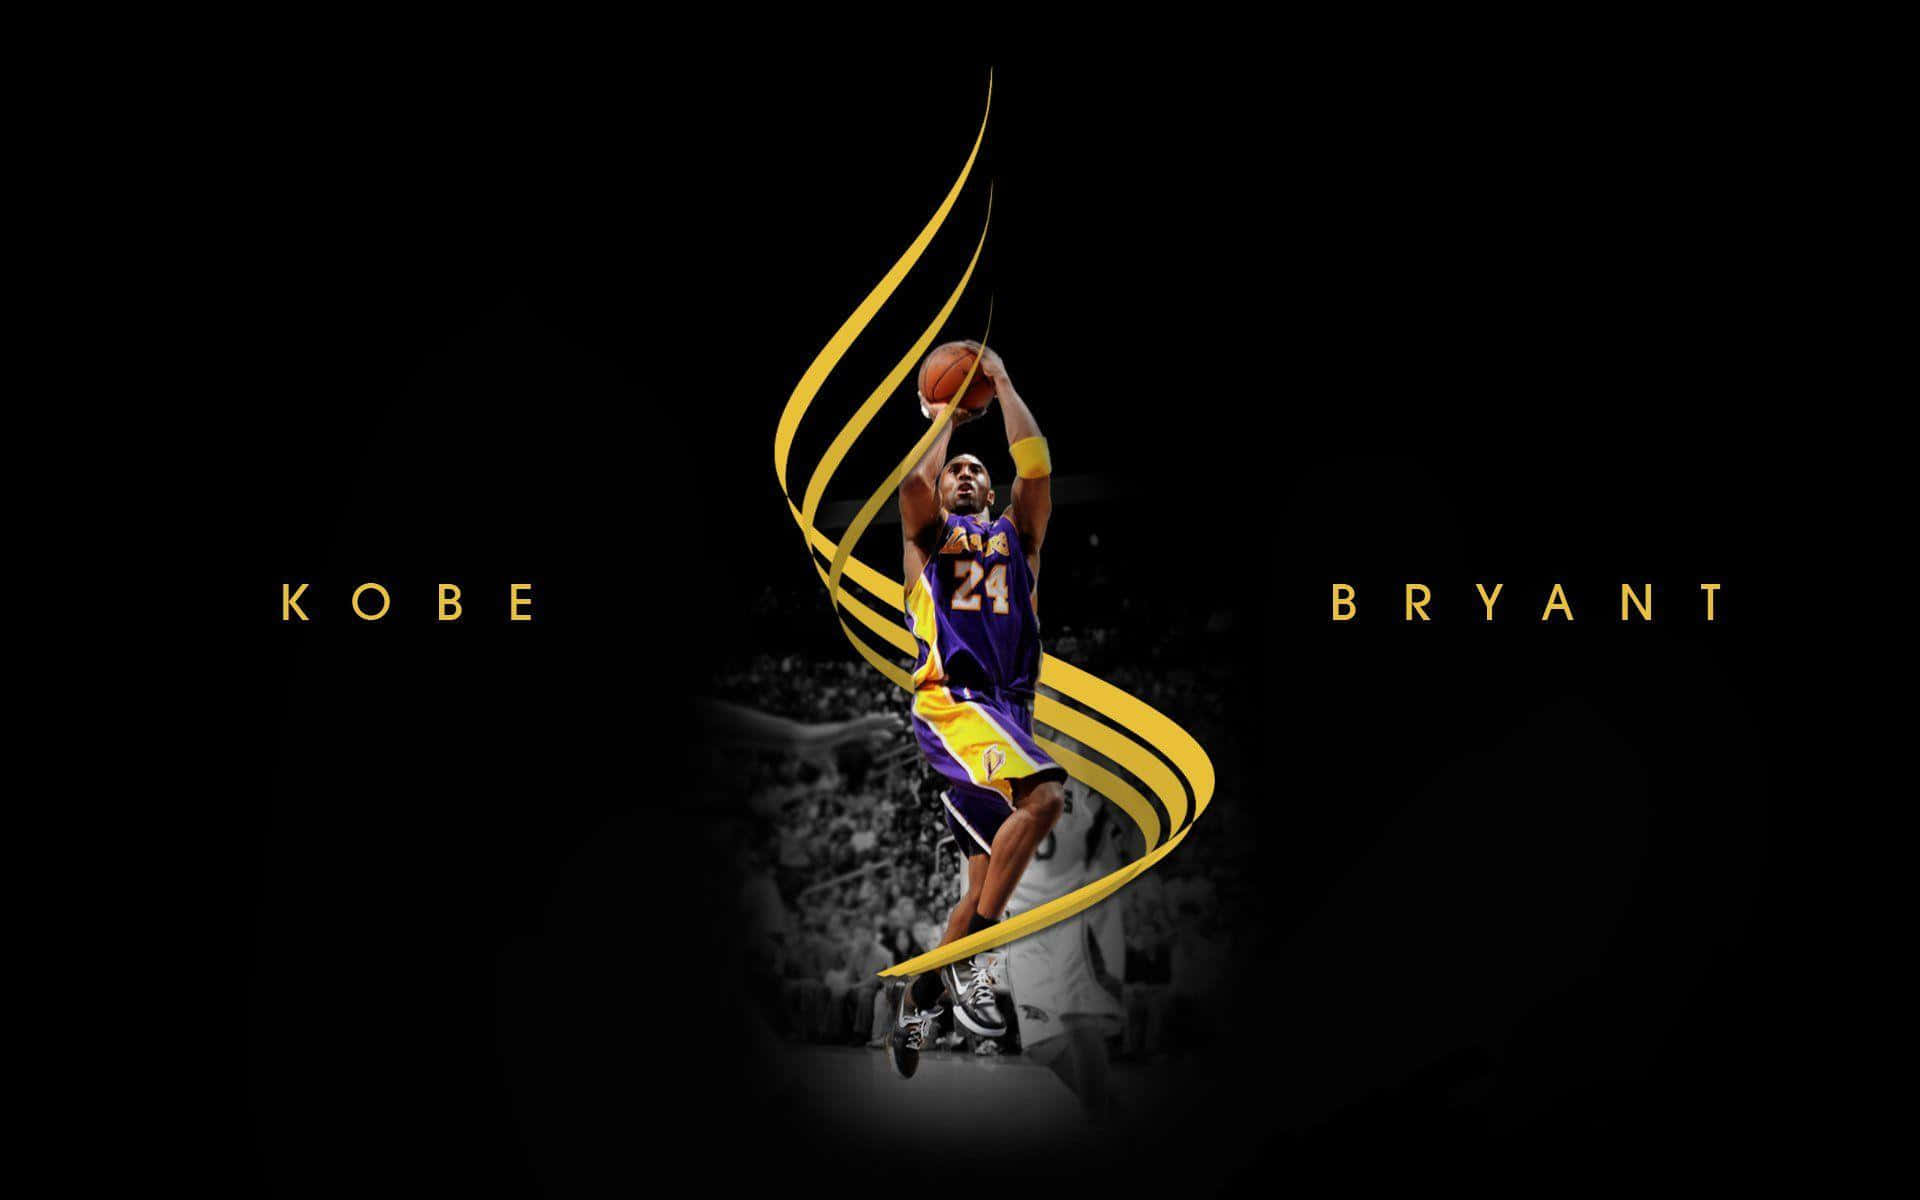 Kobe Bryant 24 Logo Aesthetic Digital Art Wallpaper